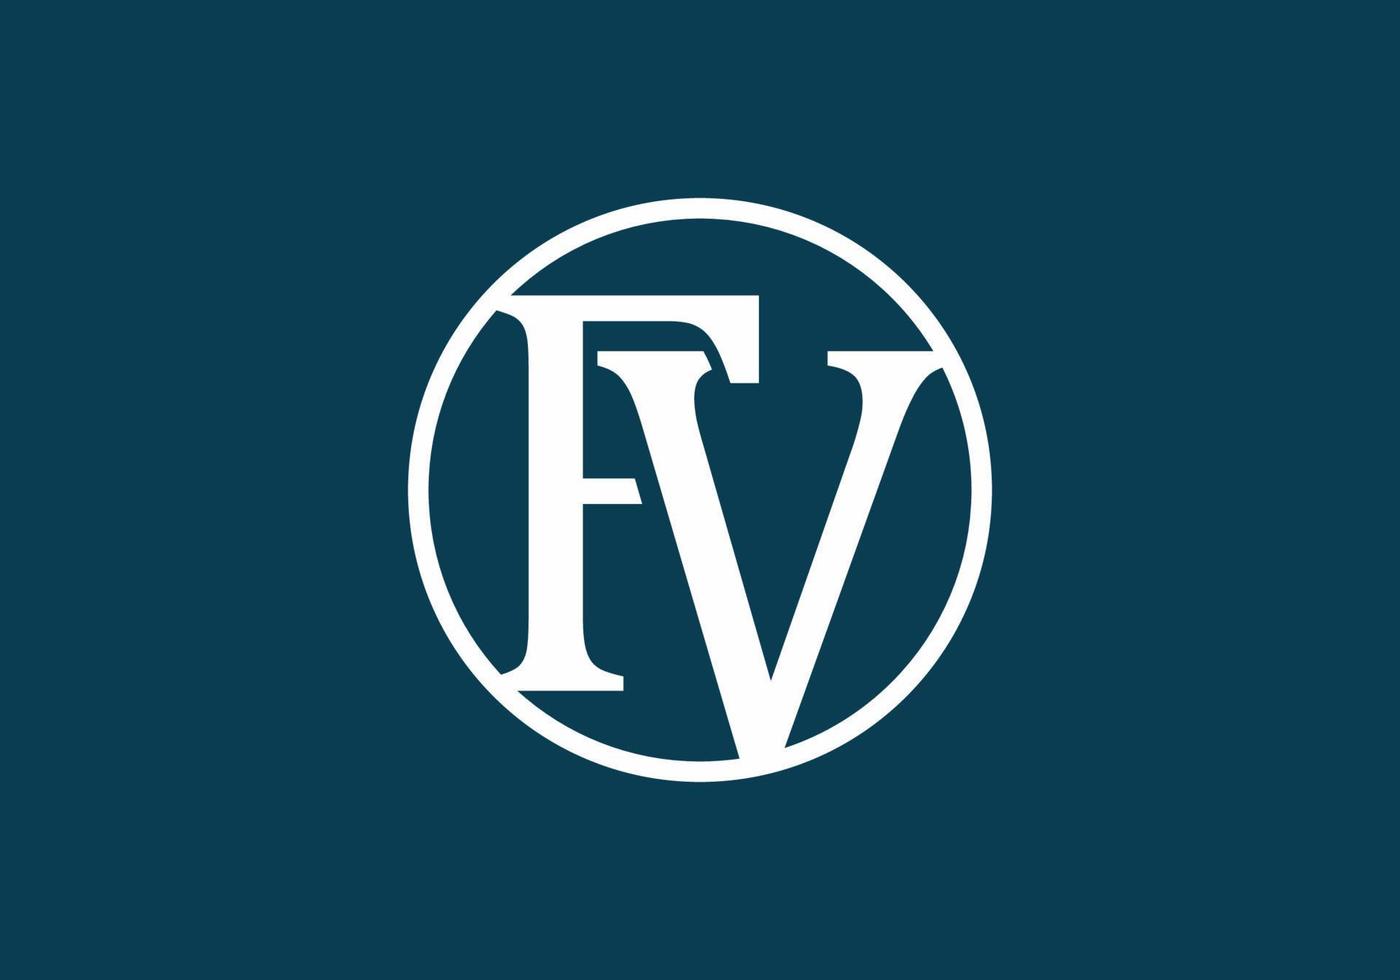 wit blauw fv beginletter logo vector